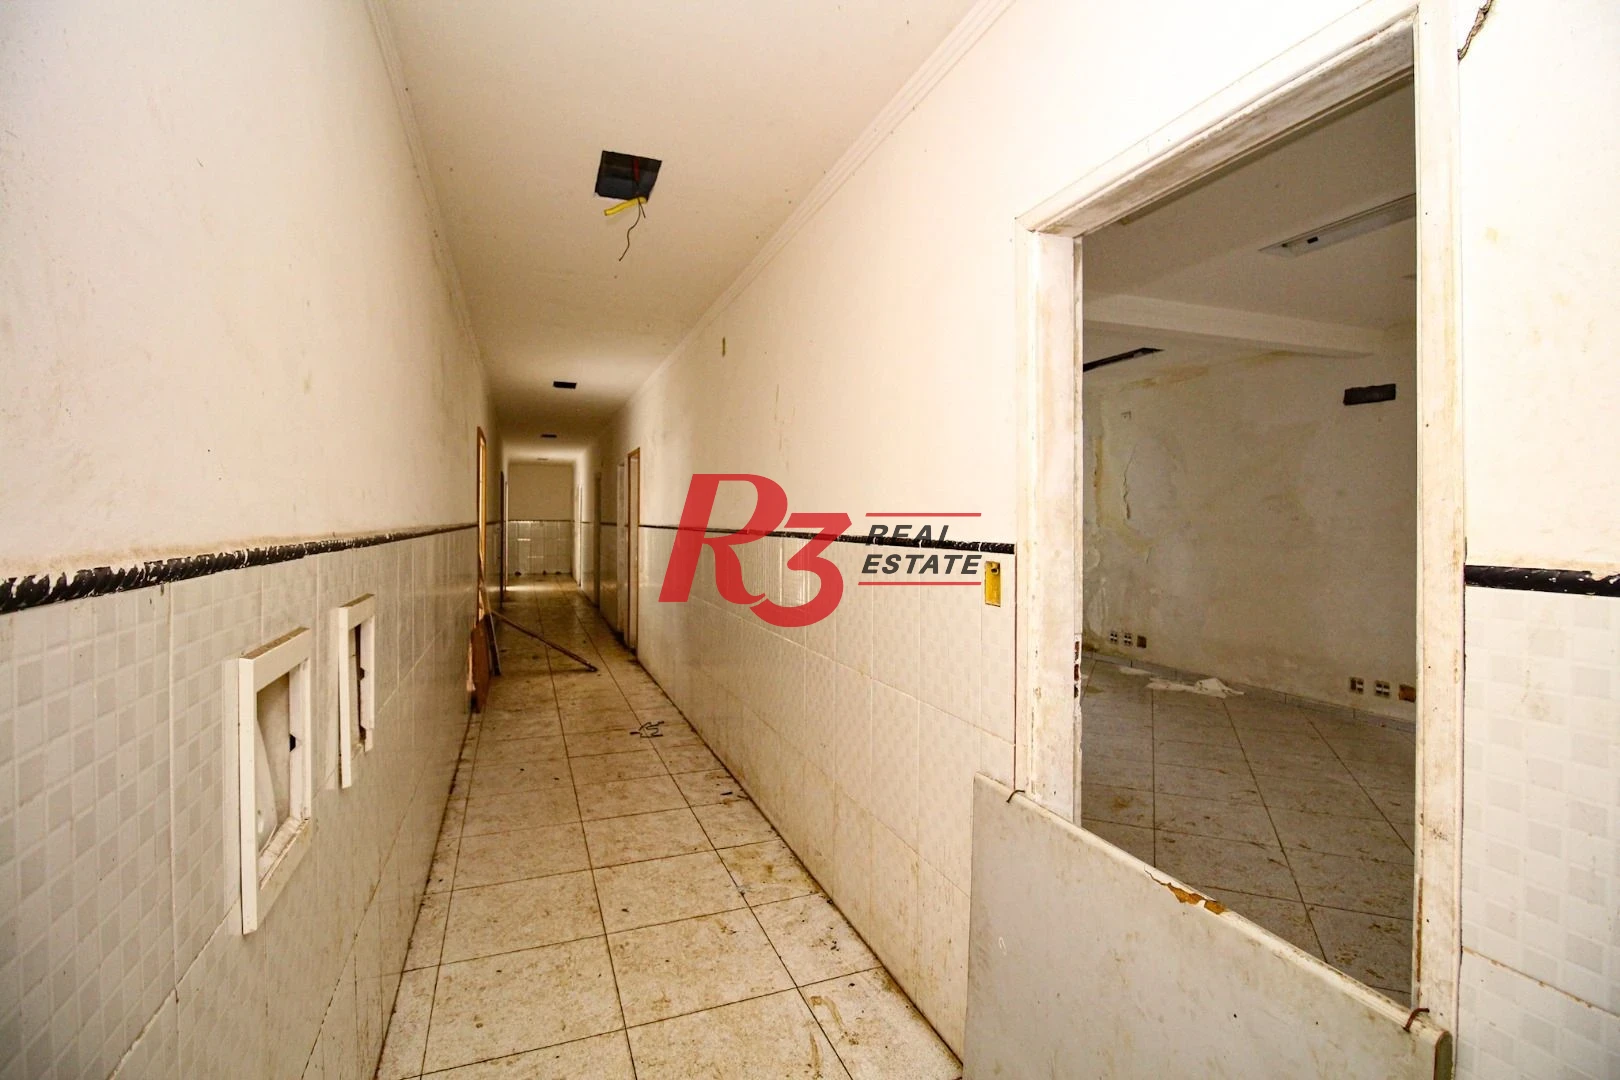 Loja para alugar, 335 m² por R$ 15.478,00/mês - Centro - Santos/SP